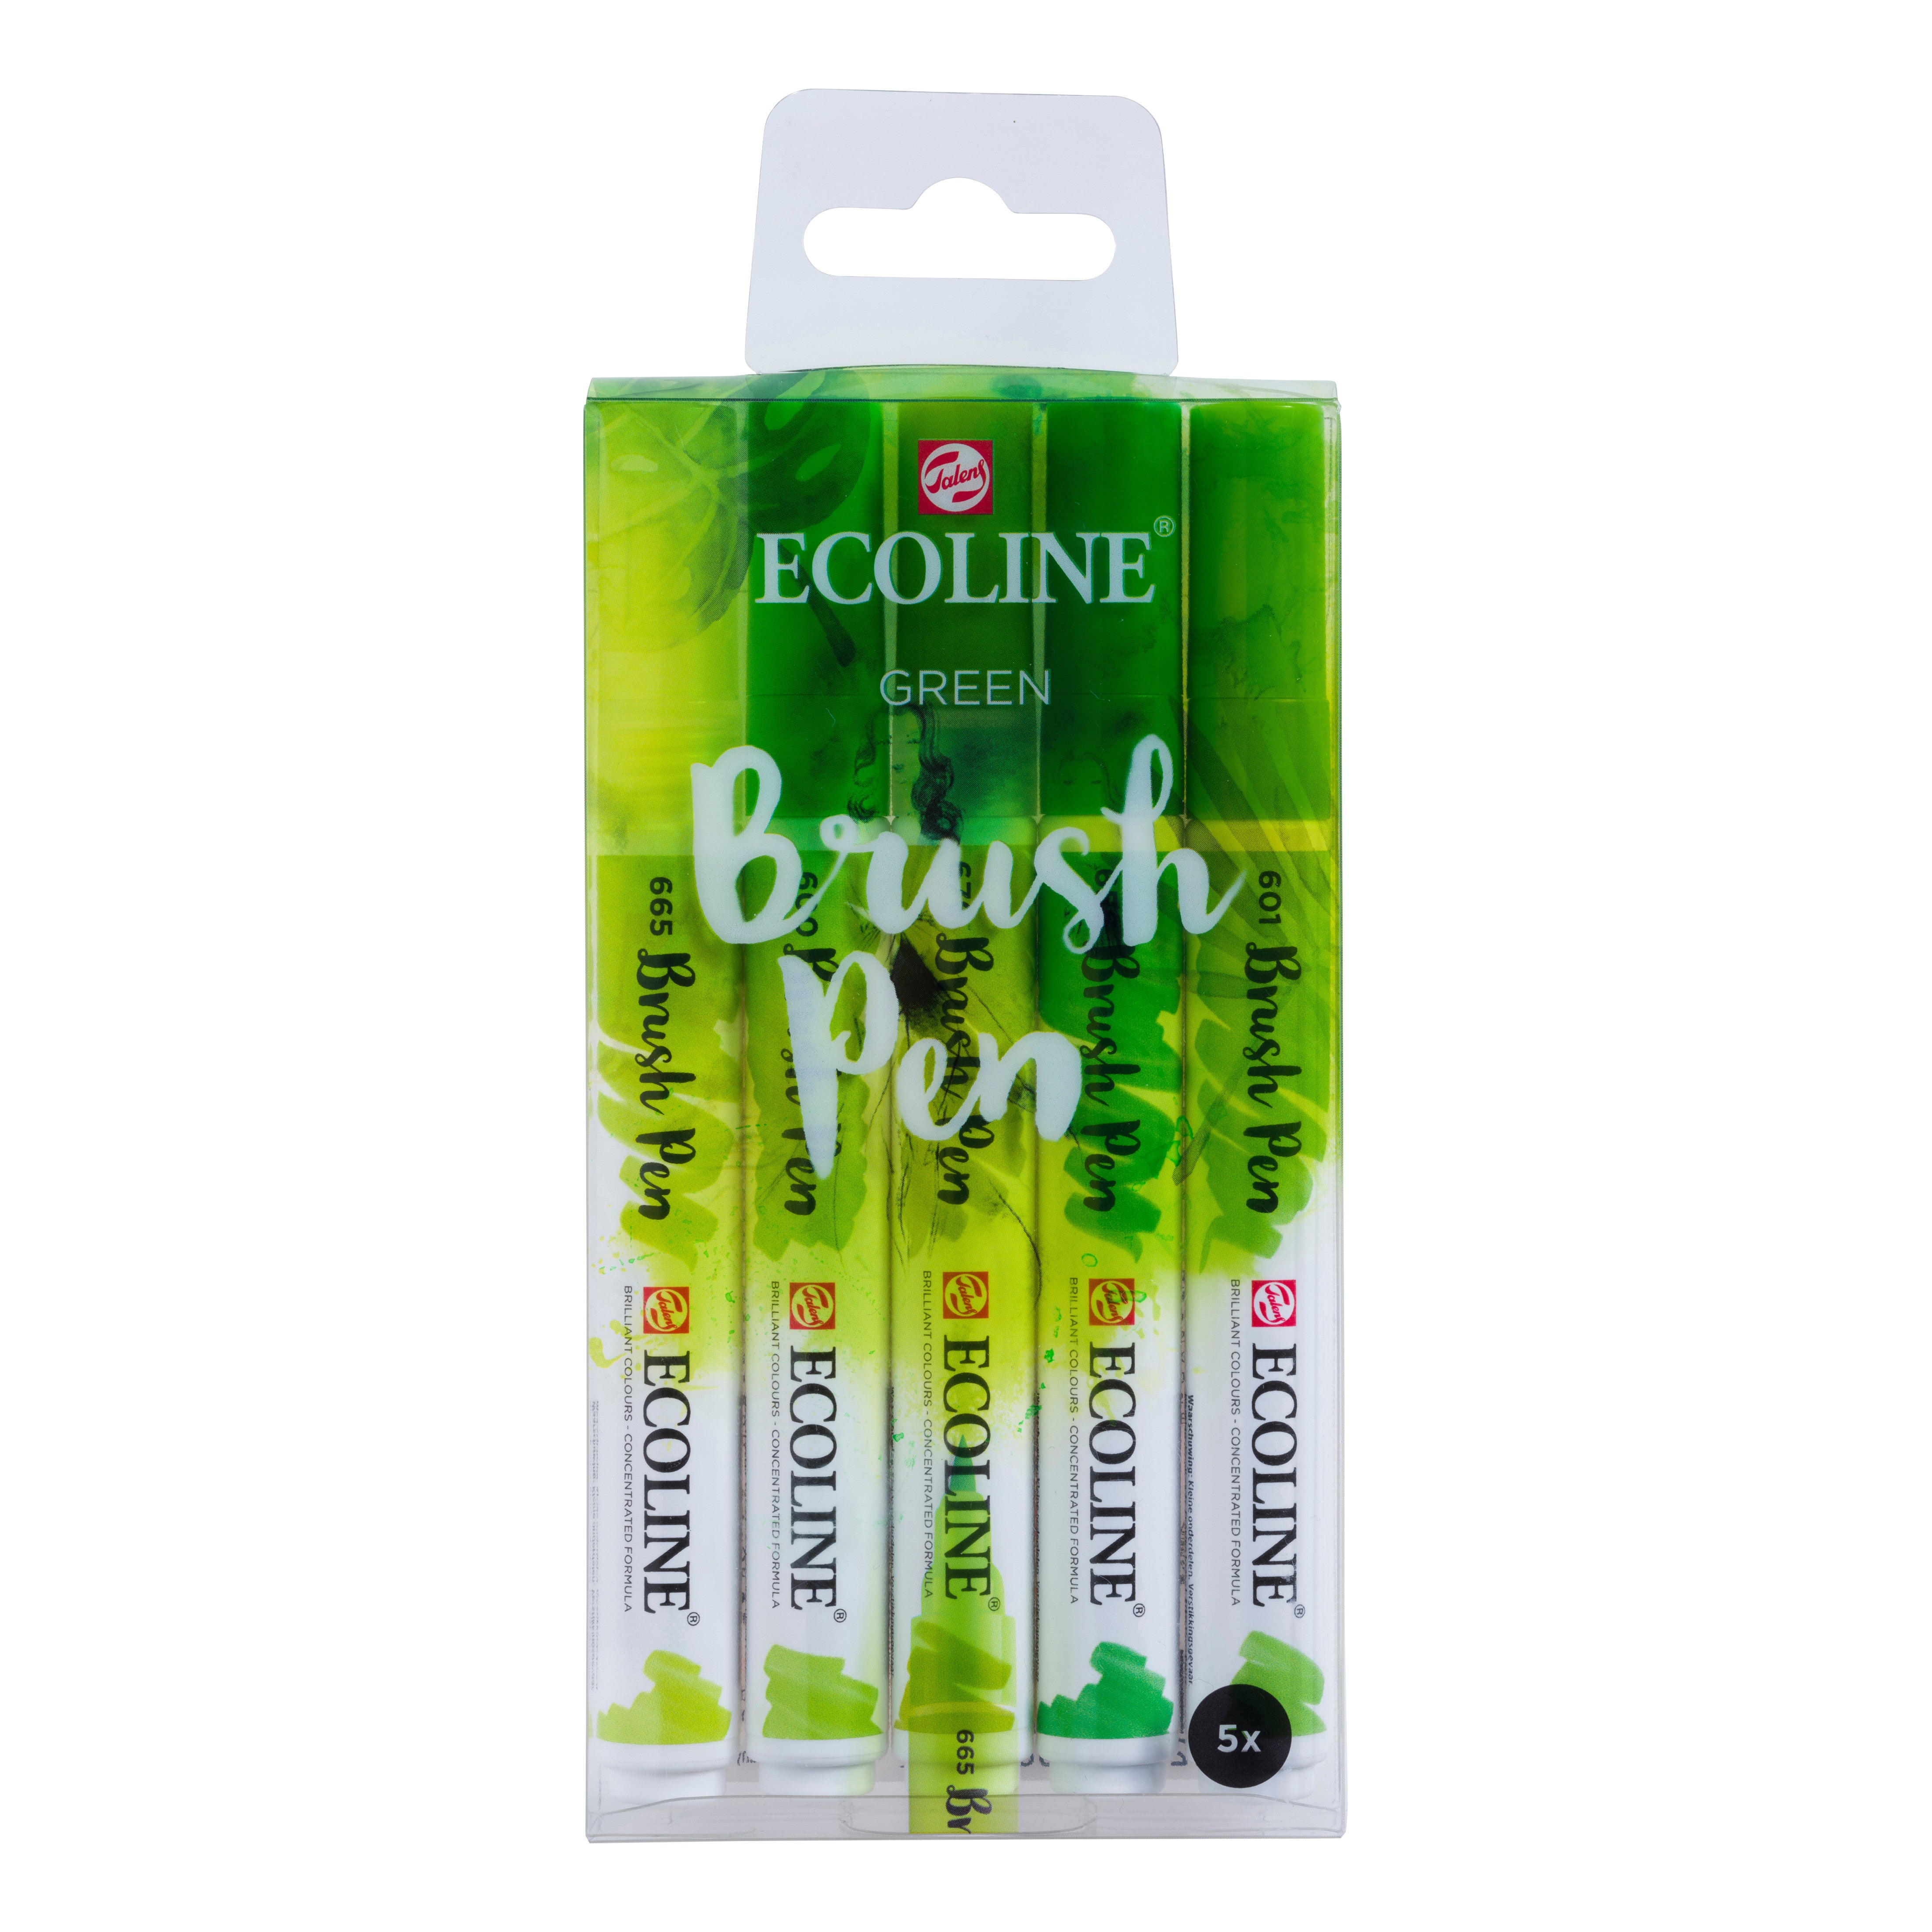 Royal Talens Ecoline - Set 5 Marcadores Brush Pen; Pastel – Dibu Chile